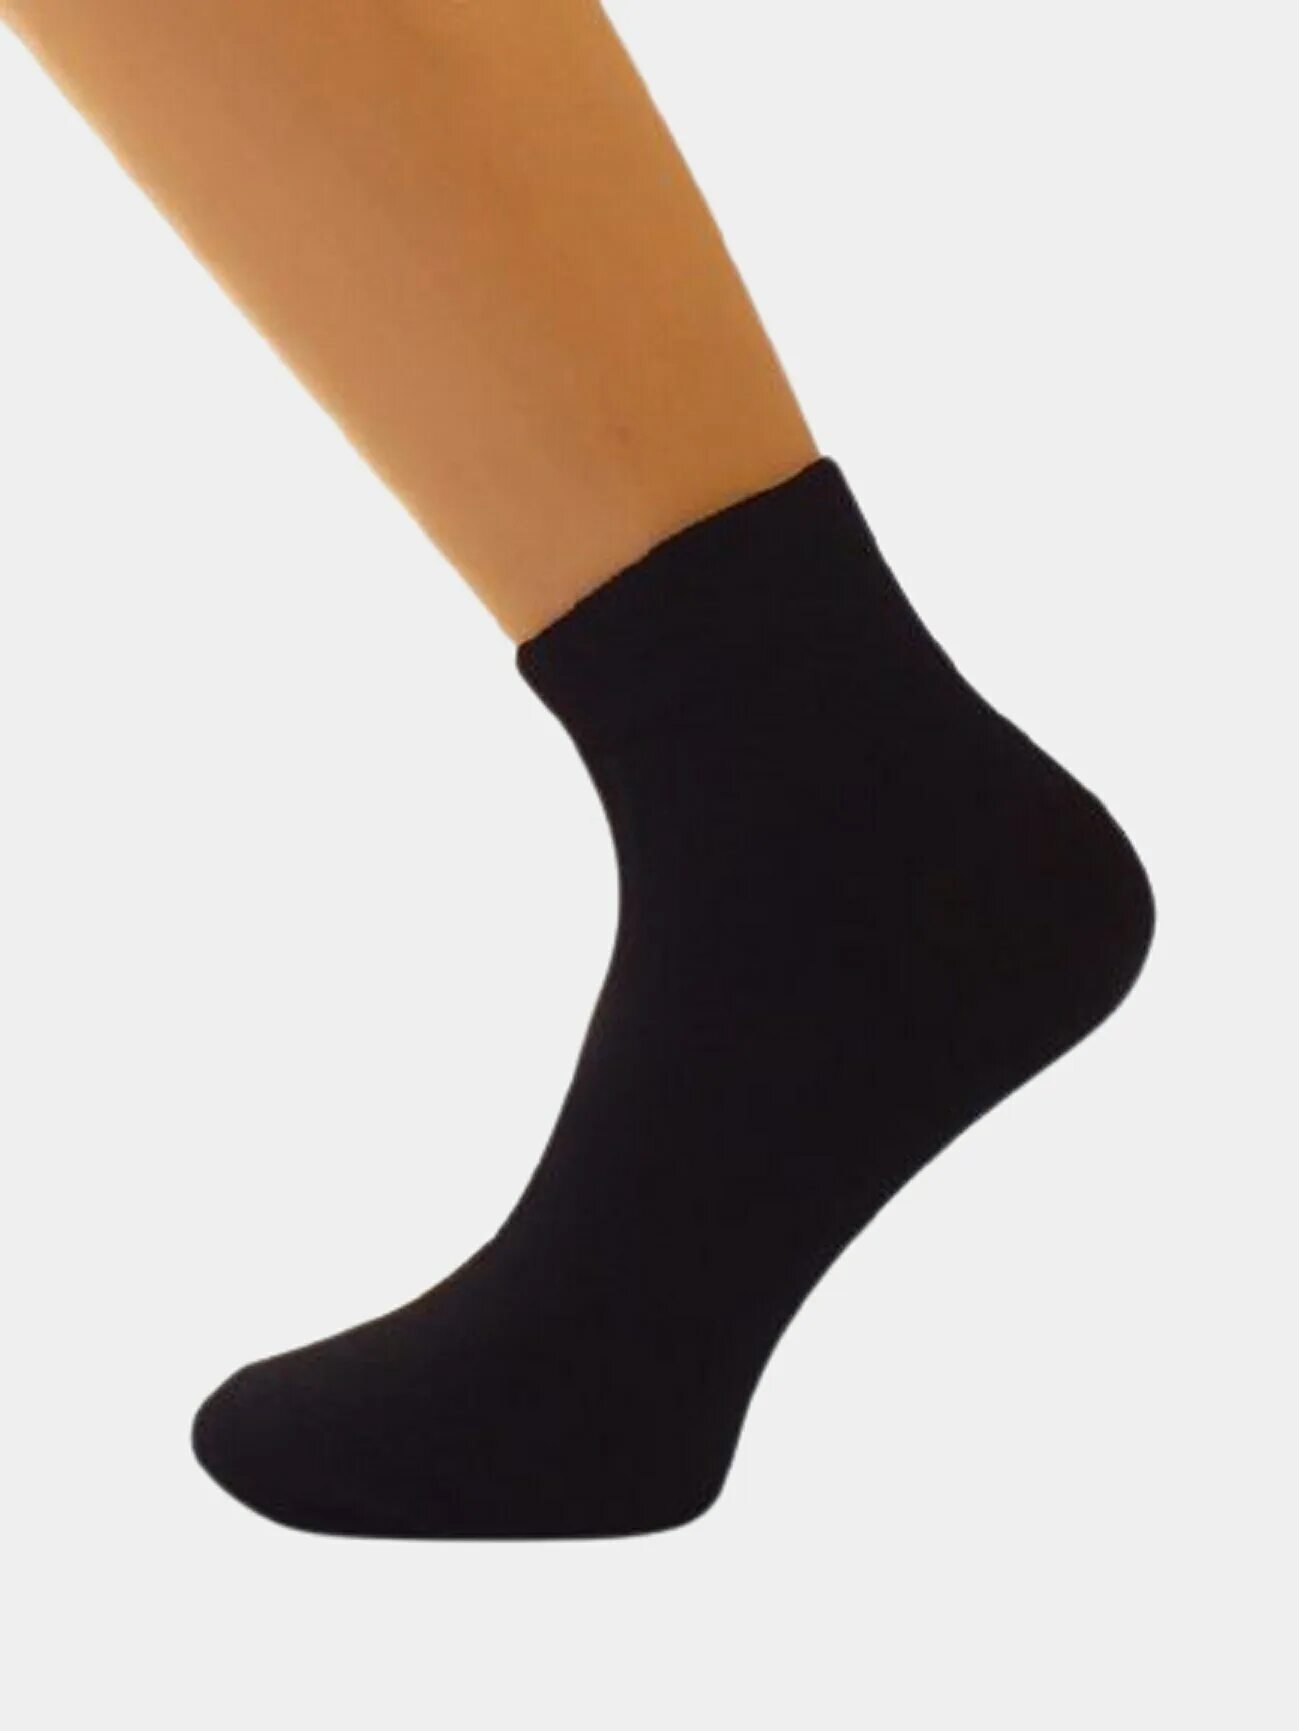 Носки Элегия детские пс421. Носки черные короткие. Подростковые носки черные. Носки женские короткие черные. Черные носки хлопок